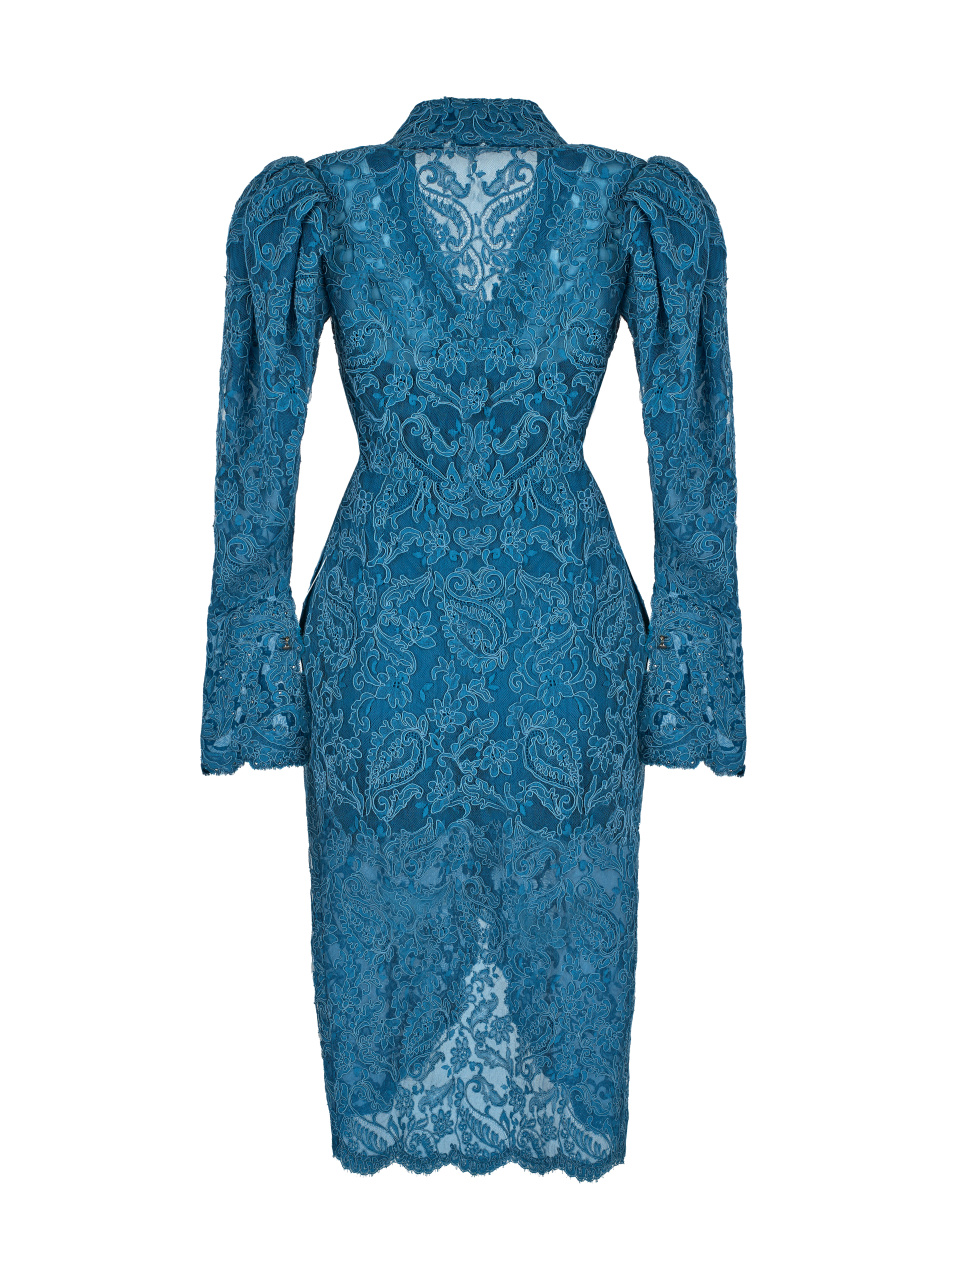 Платье с наложением фестончатого кружева, темно-синее